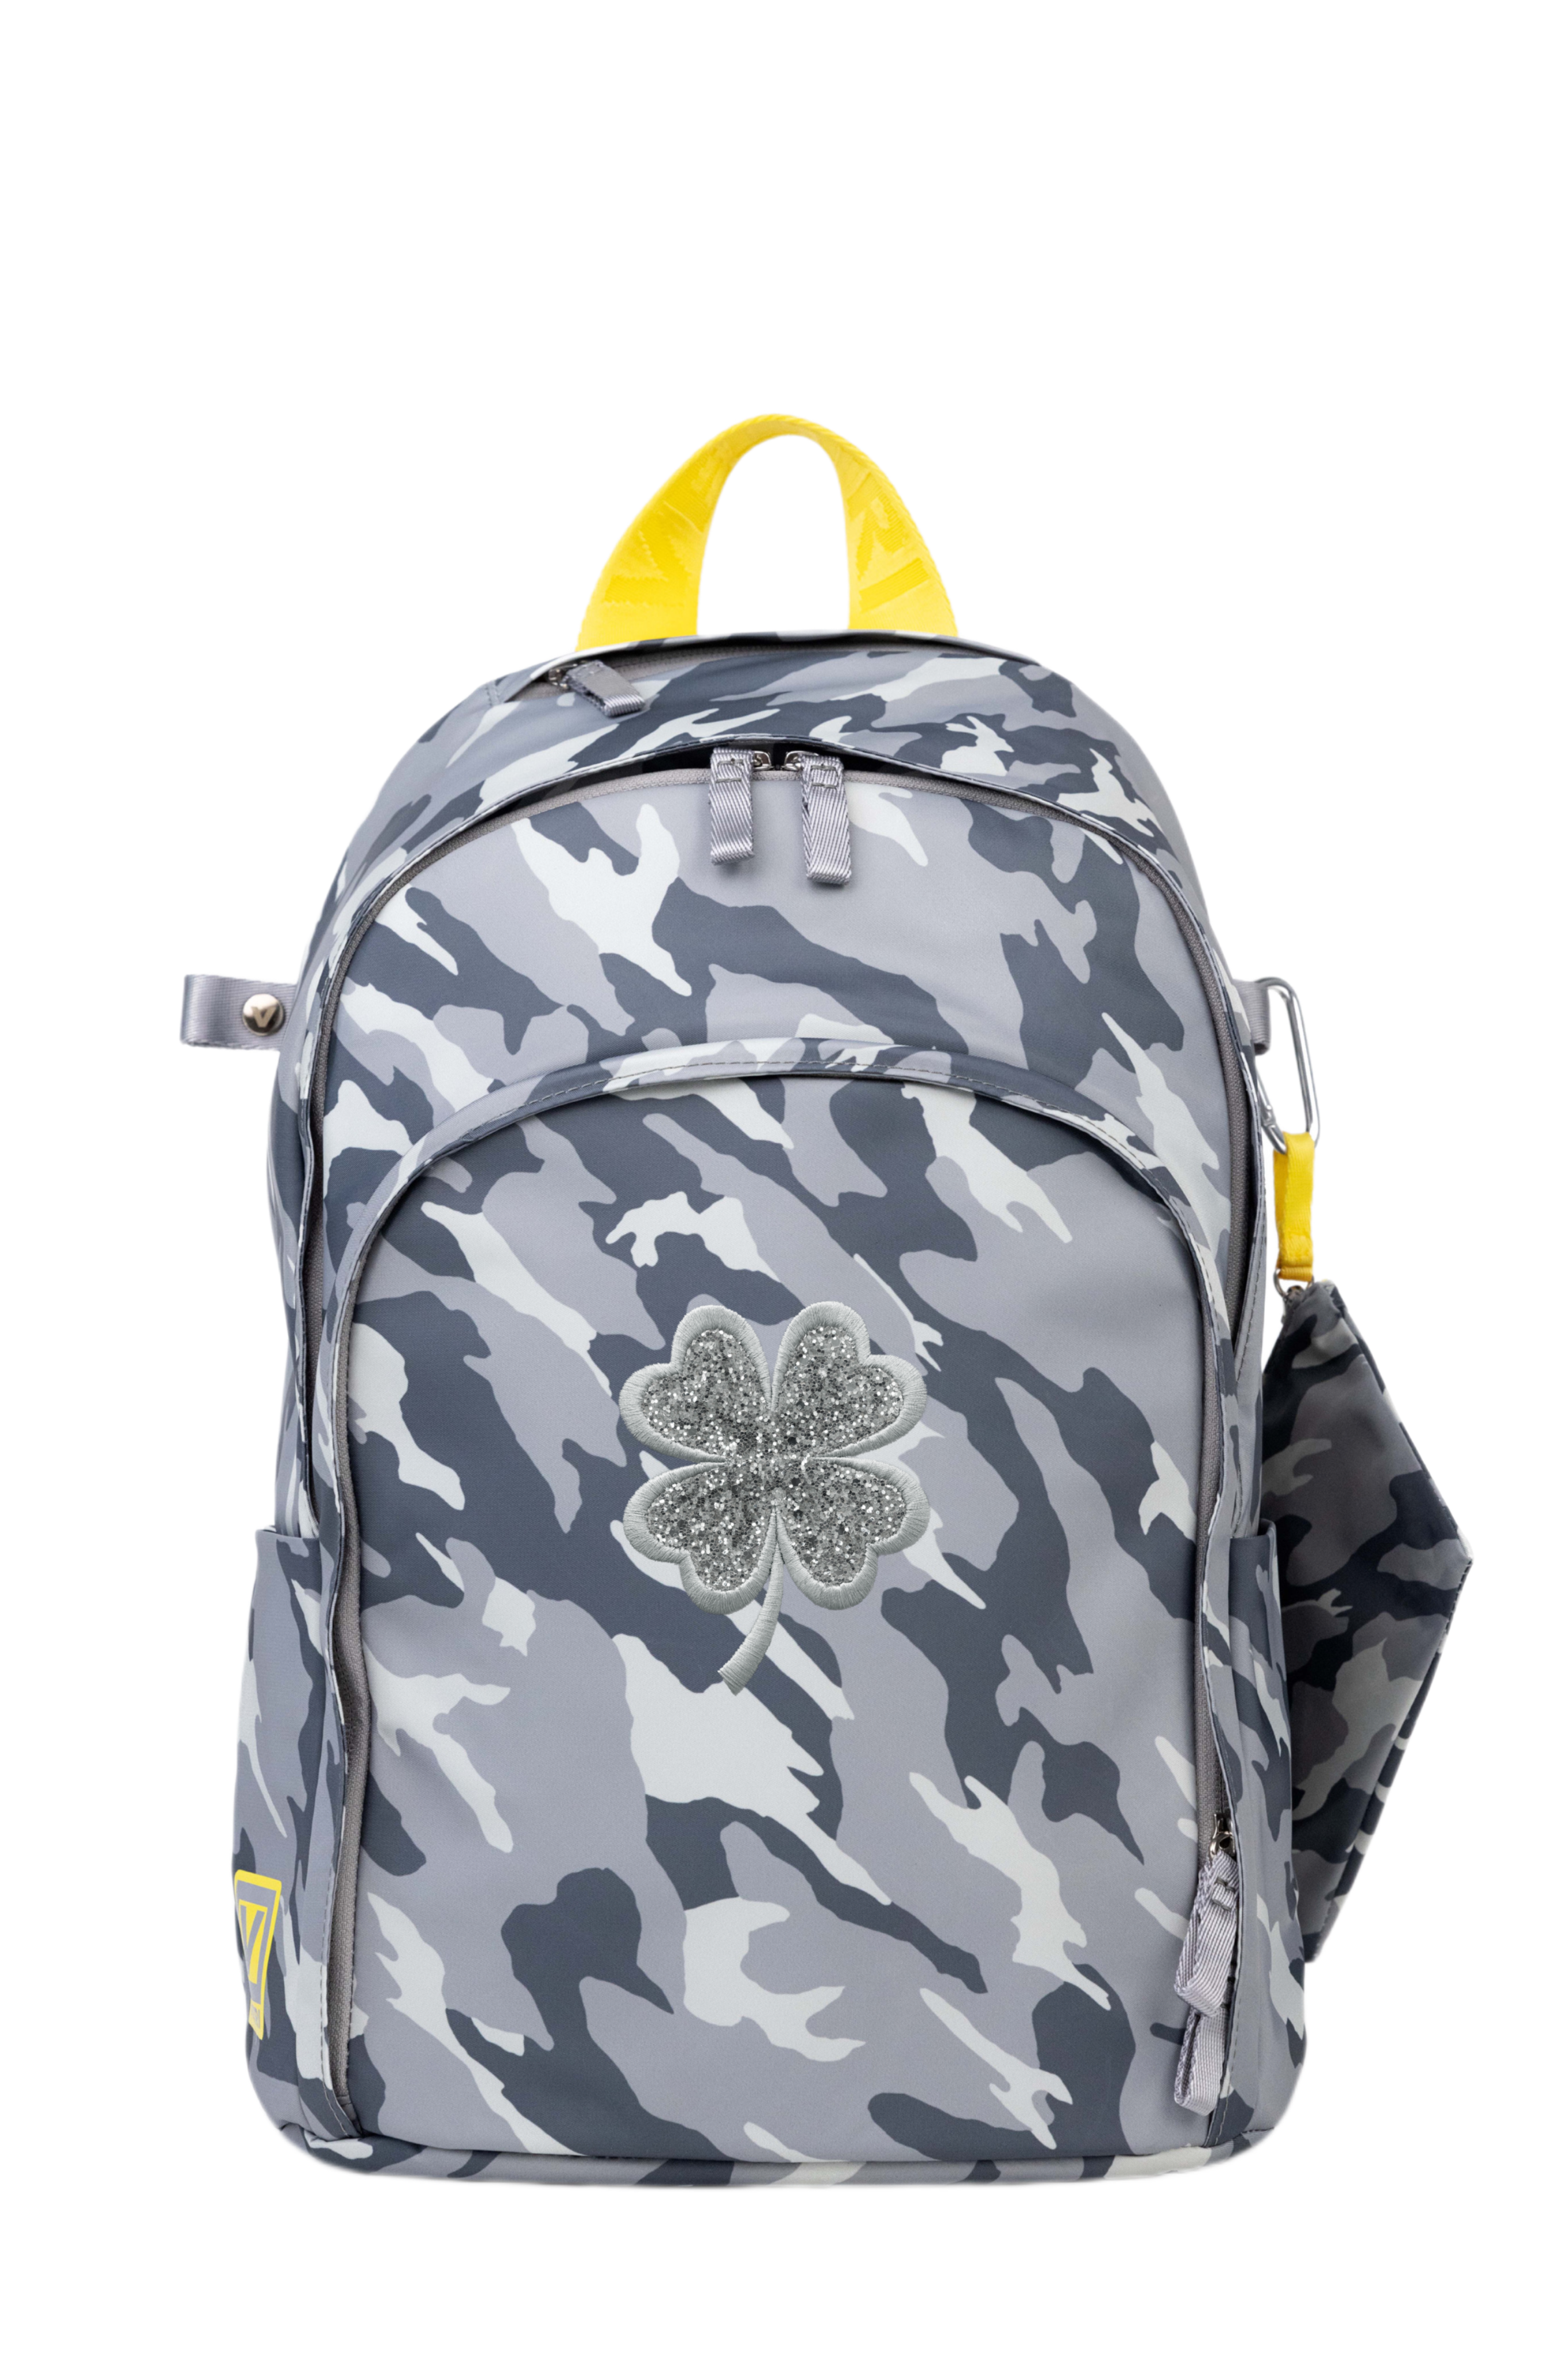 Novelty Backpack “Lucky Clover”